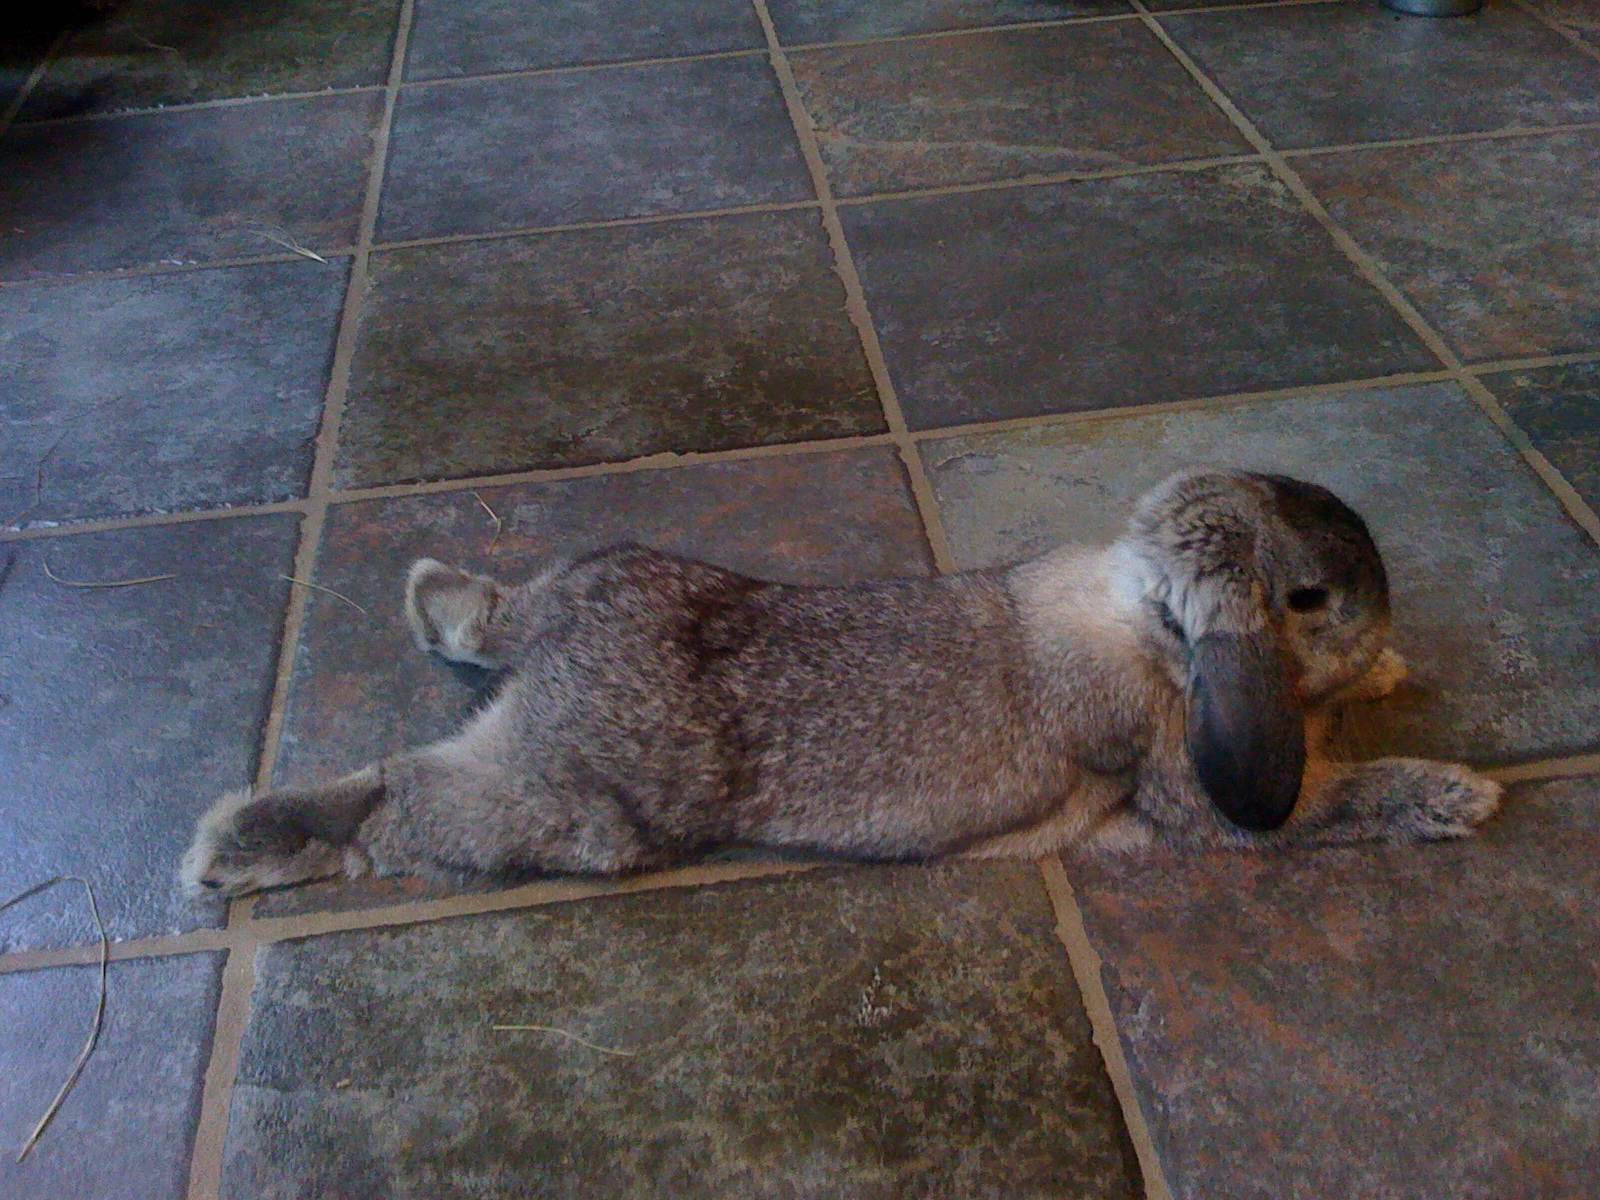 Bunny Sprawls Out on the Tile Floor